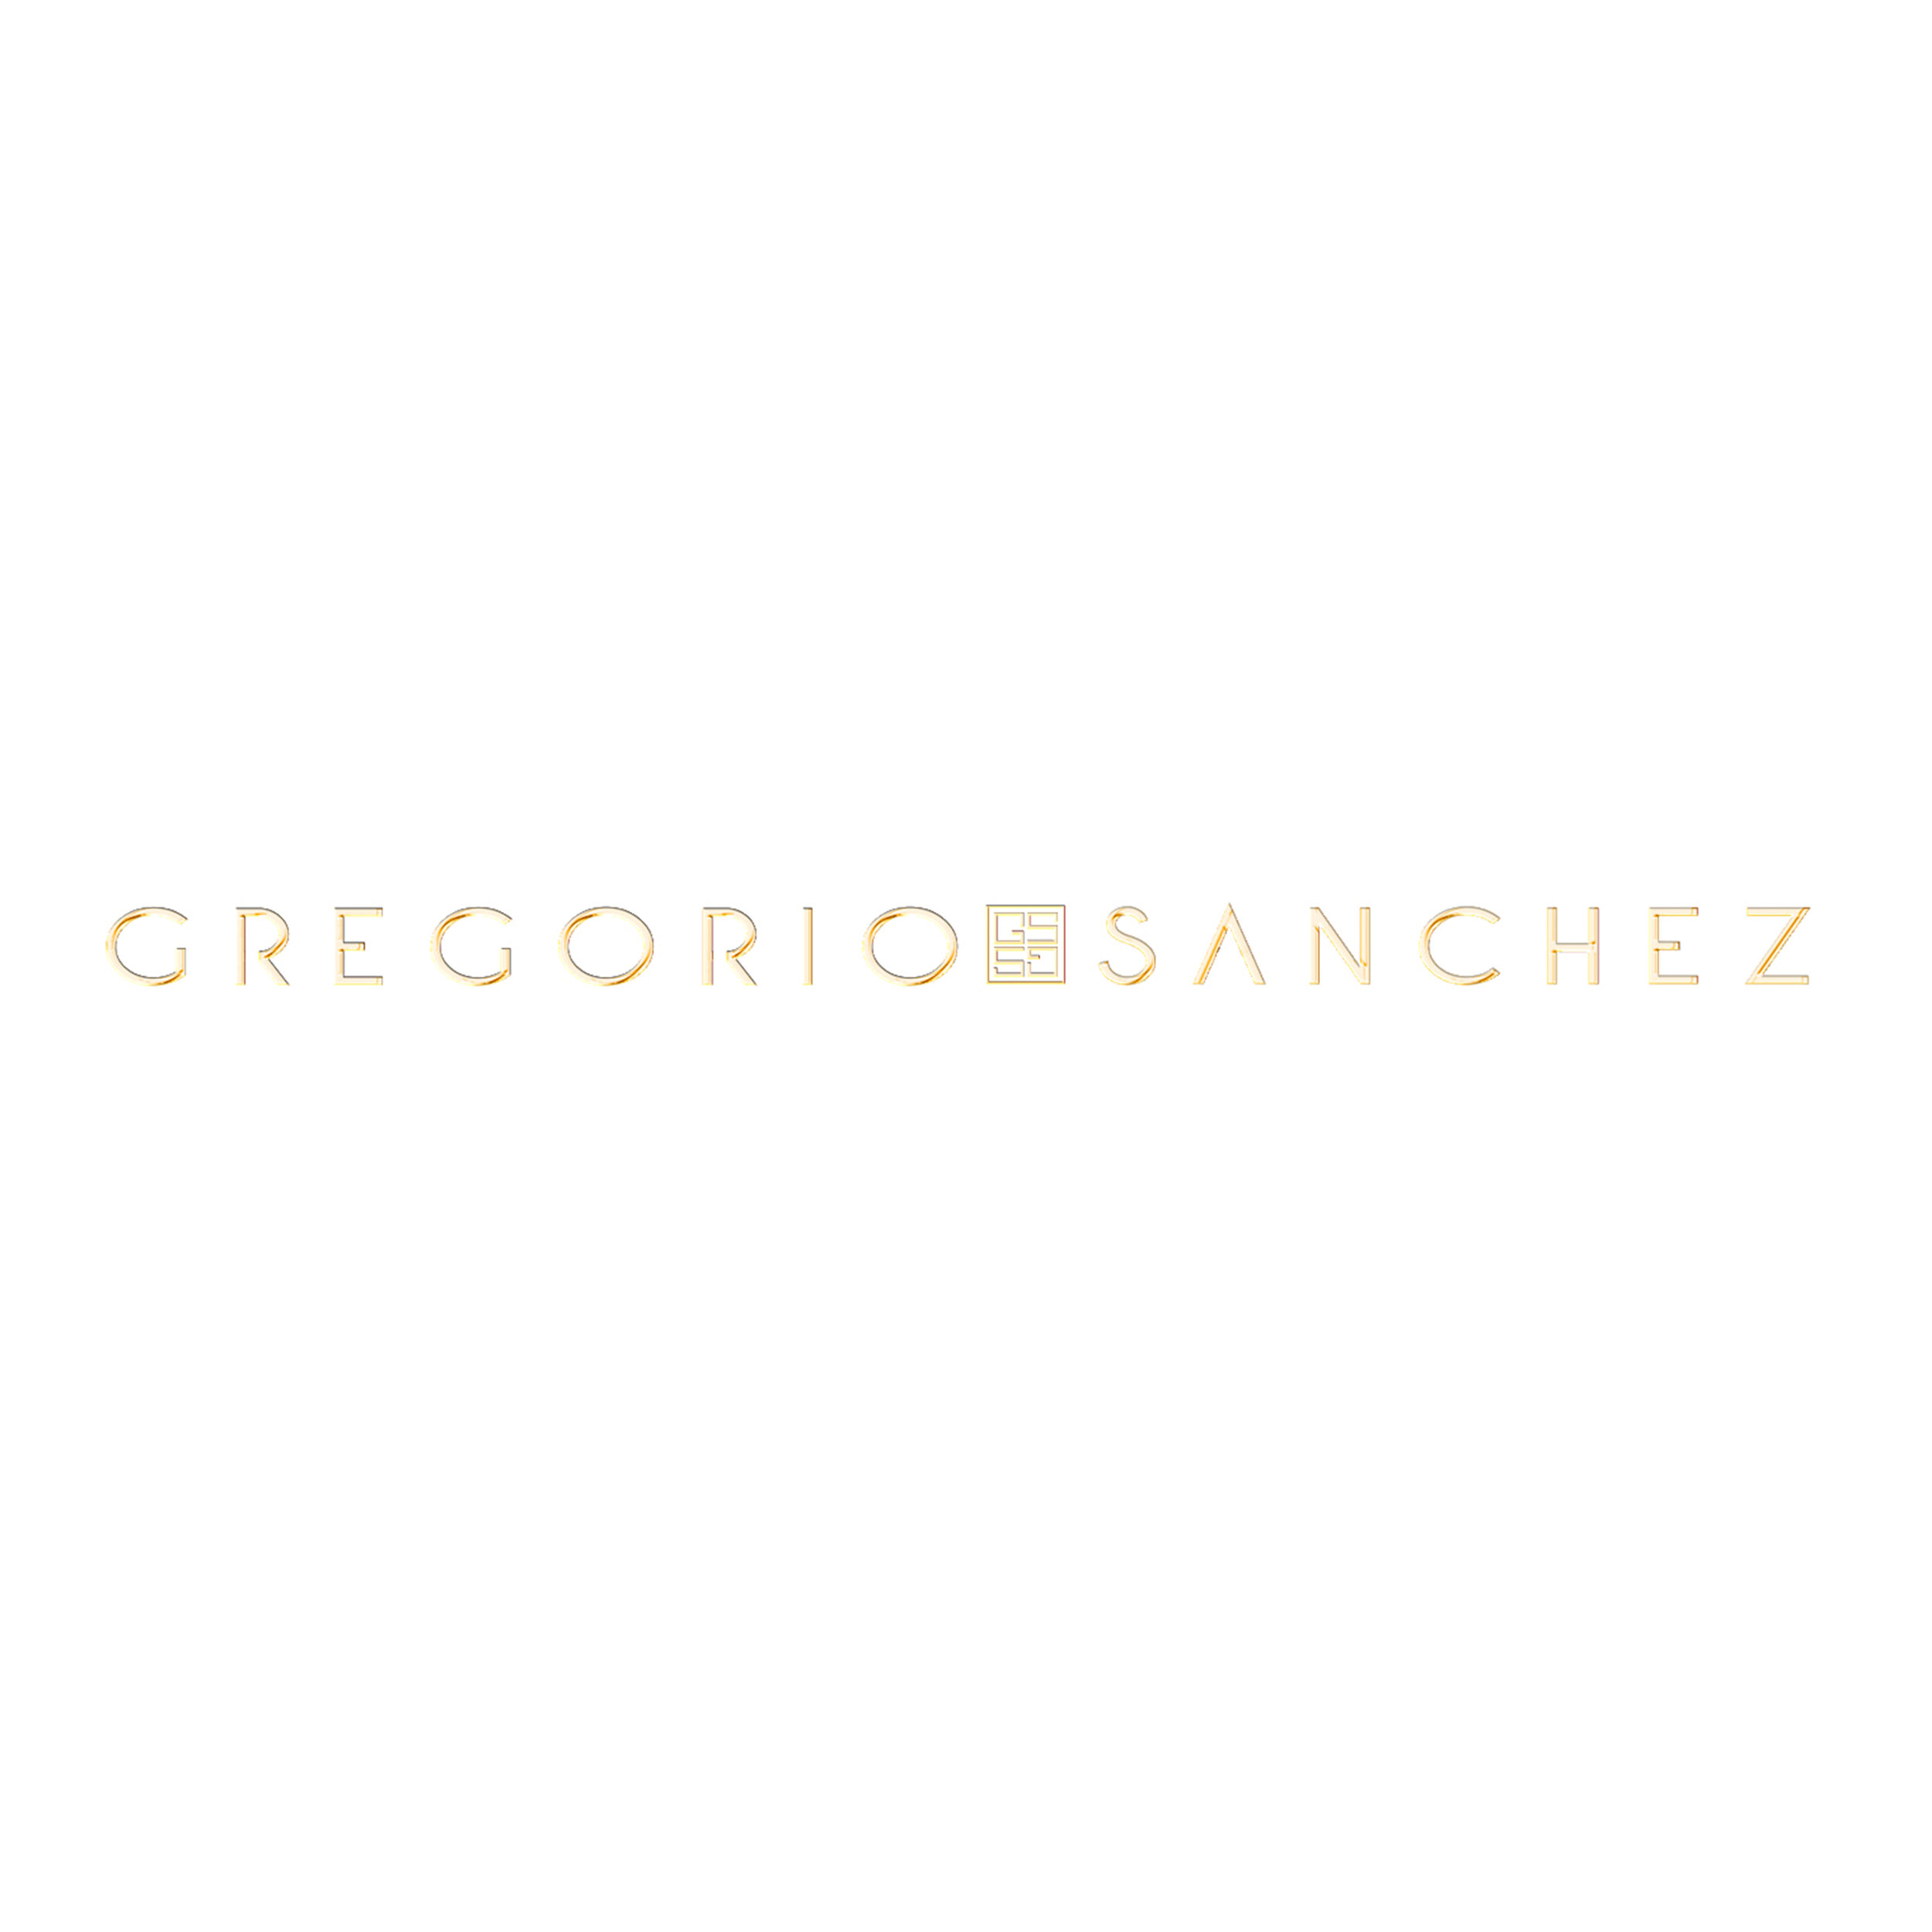 Gregorio Sanchez fitted.jpg